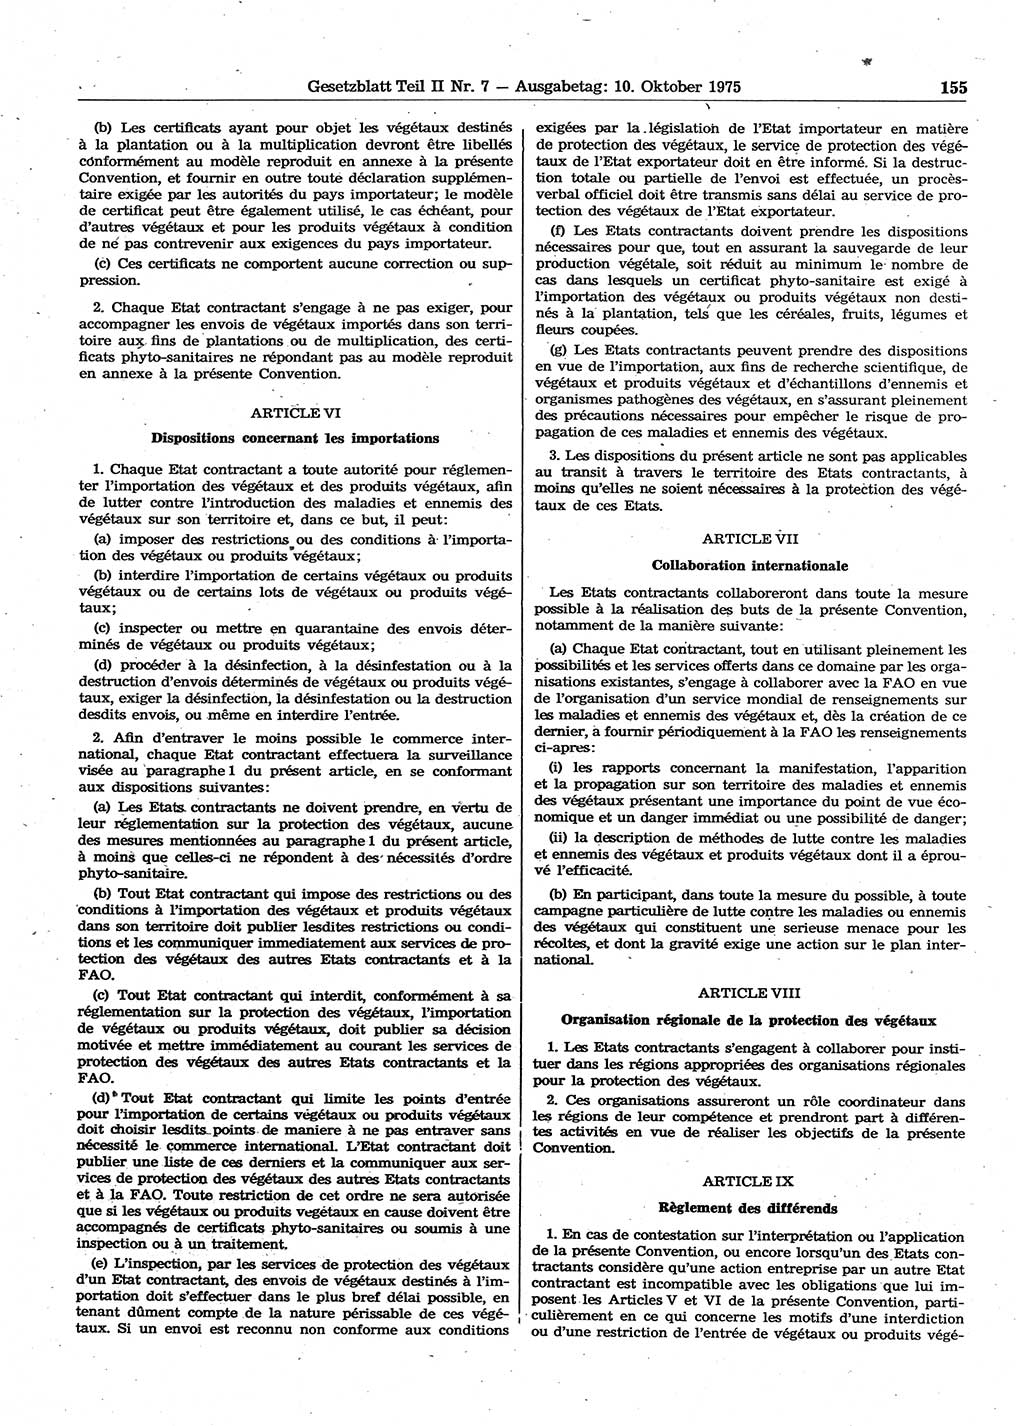 Gesetzblatt (GBl.) der Deutschen Demokratischen Republik (DDR) Teil ⅠⅠ 1975, Seite 155 (GBl. DDR ⅠⅠ 1975, S. 155)